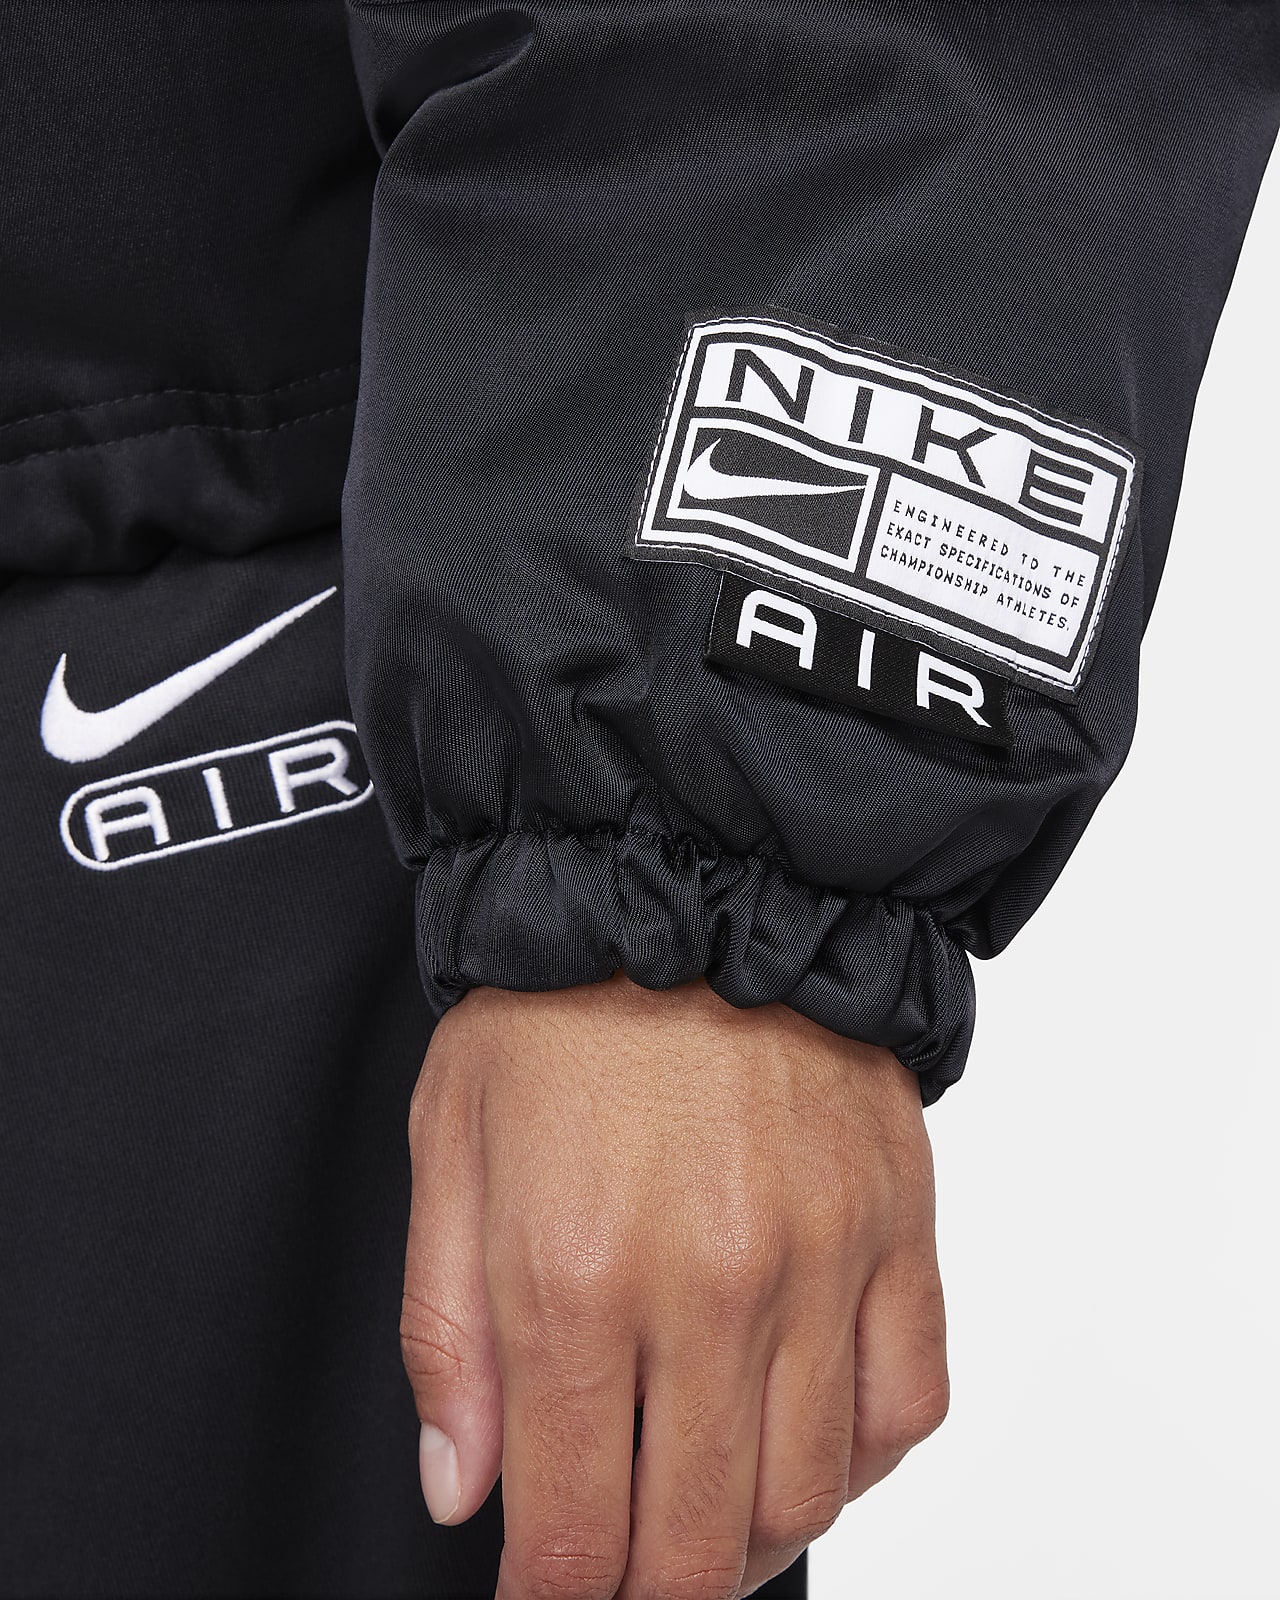 Nike Air Women's Oversized Woven Bomber Jacket